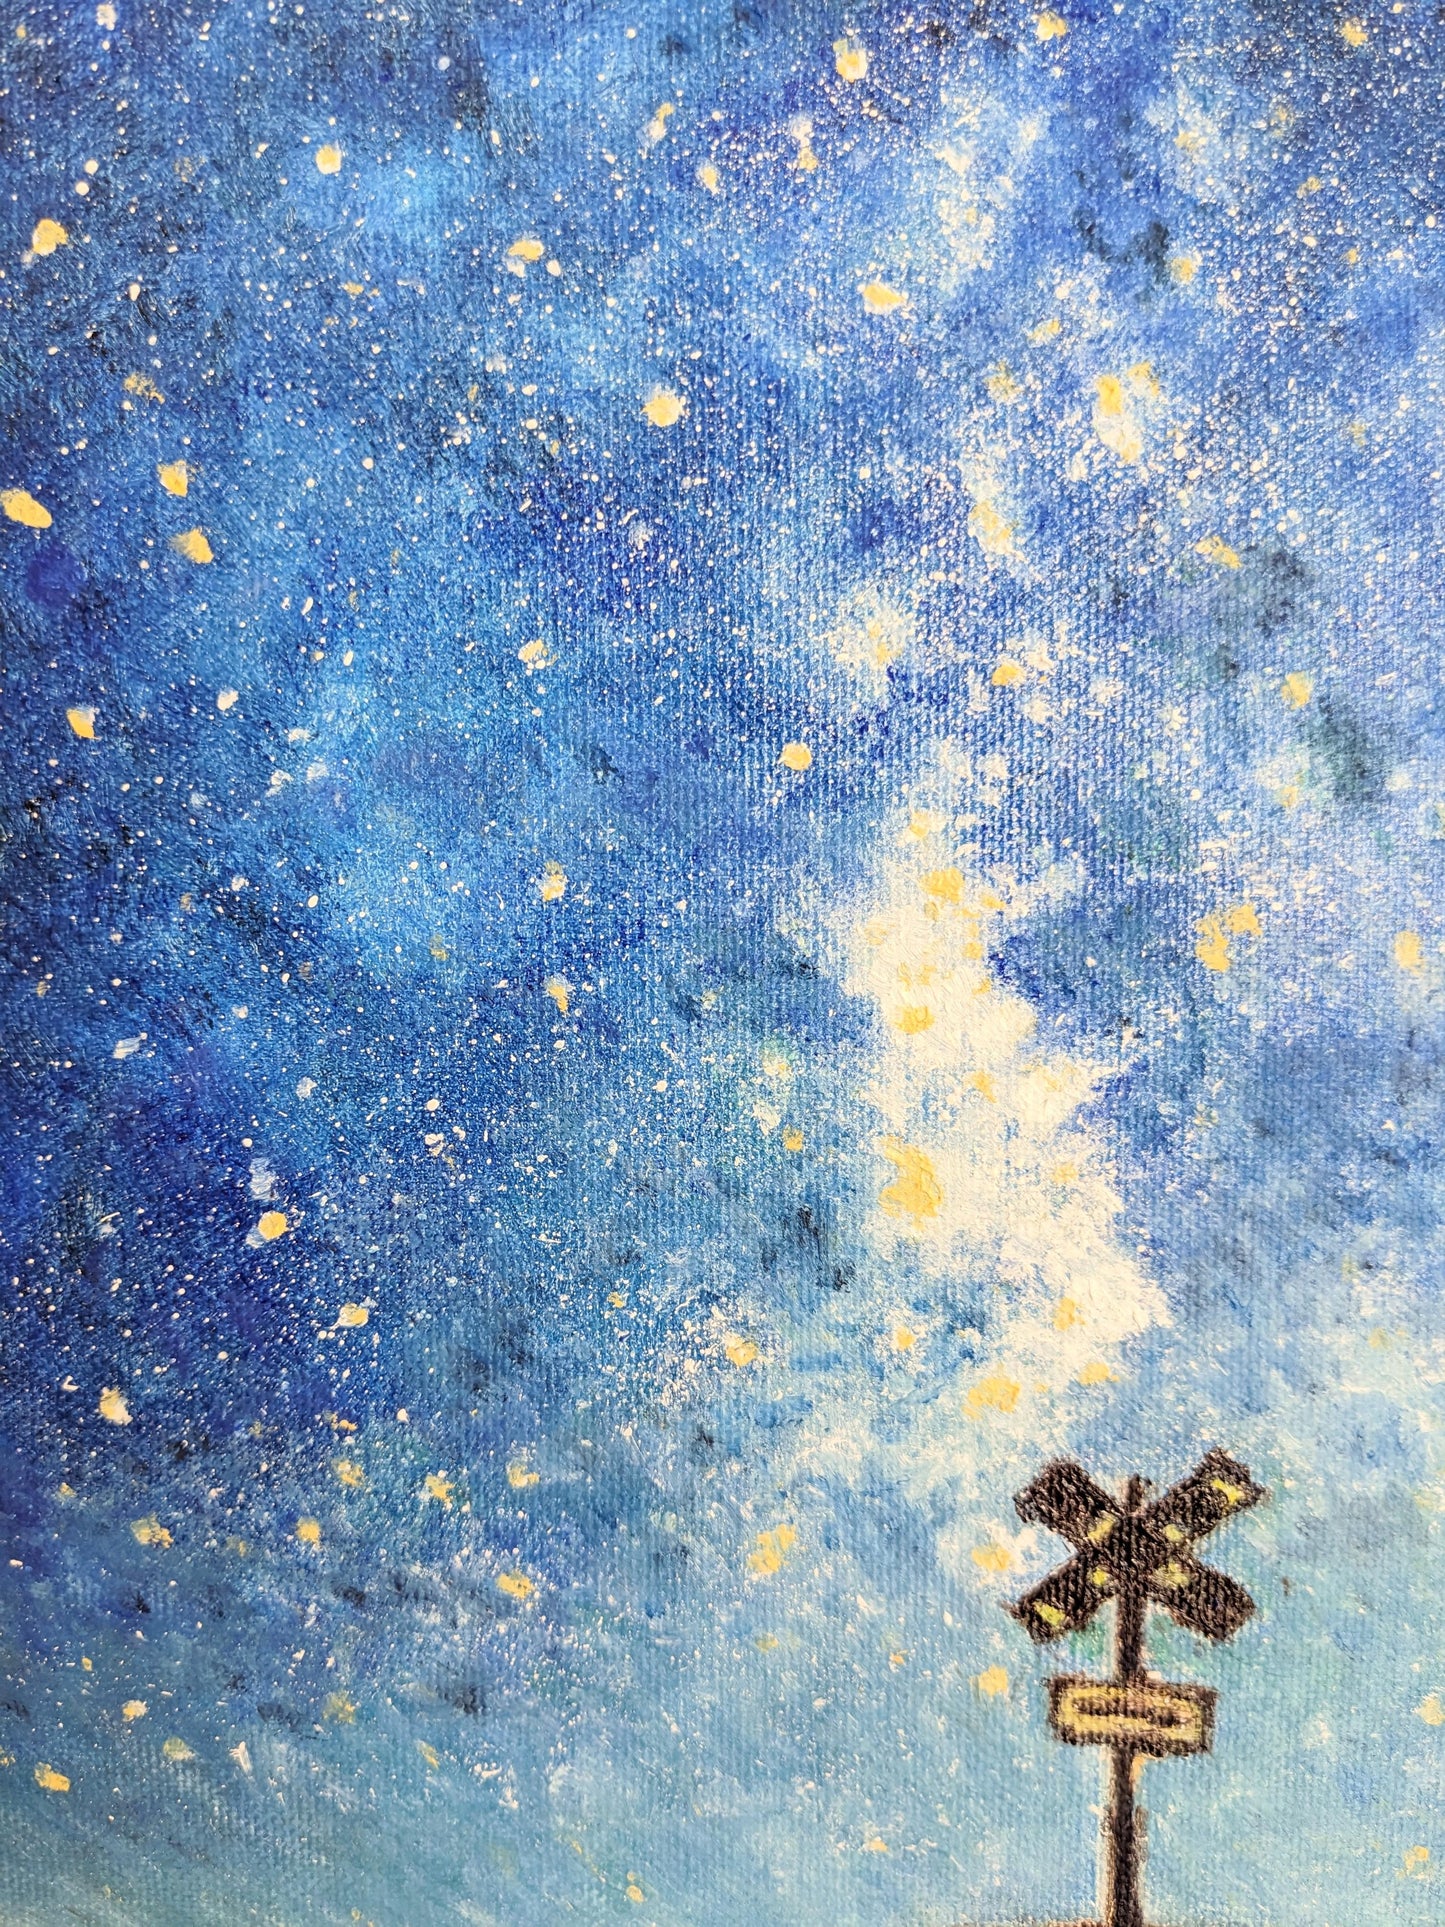 『夜空には(In the night sky)』 - FROM ARTIST